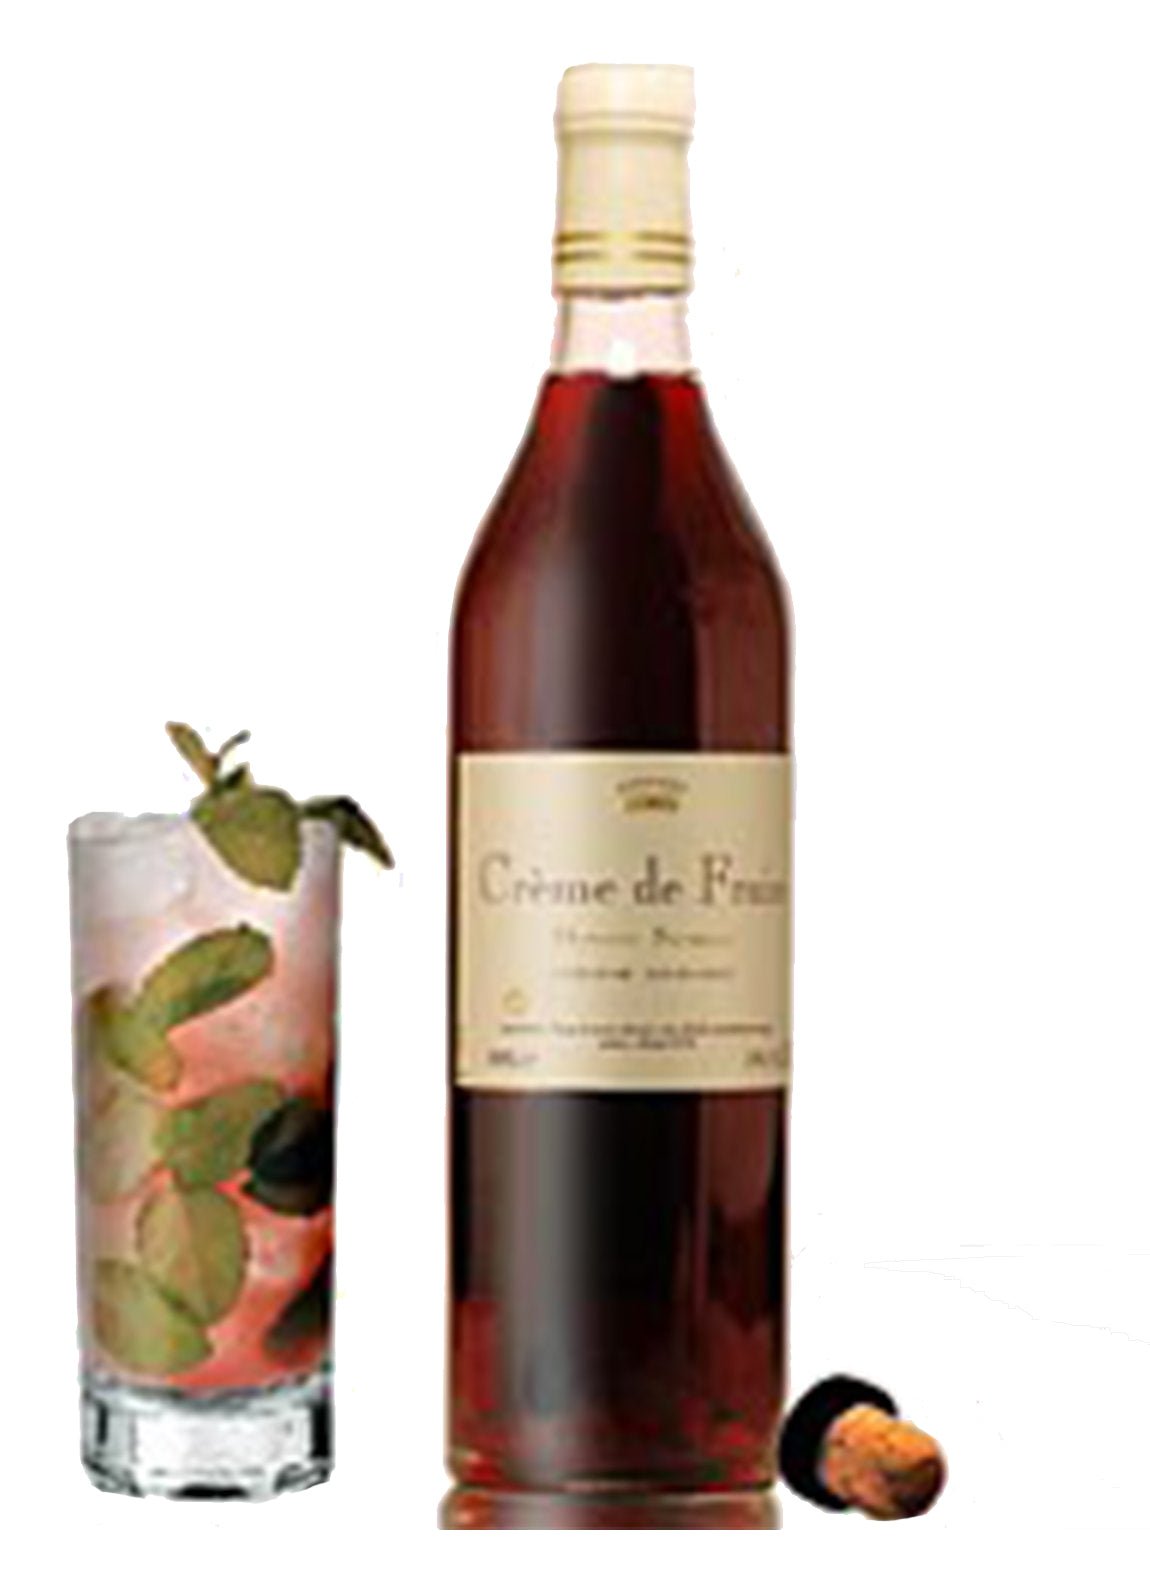 Sathenay Fraise des Bois 700ml - Fruit Cremes & Liqueurs - Liquor Wine Cave